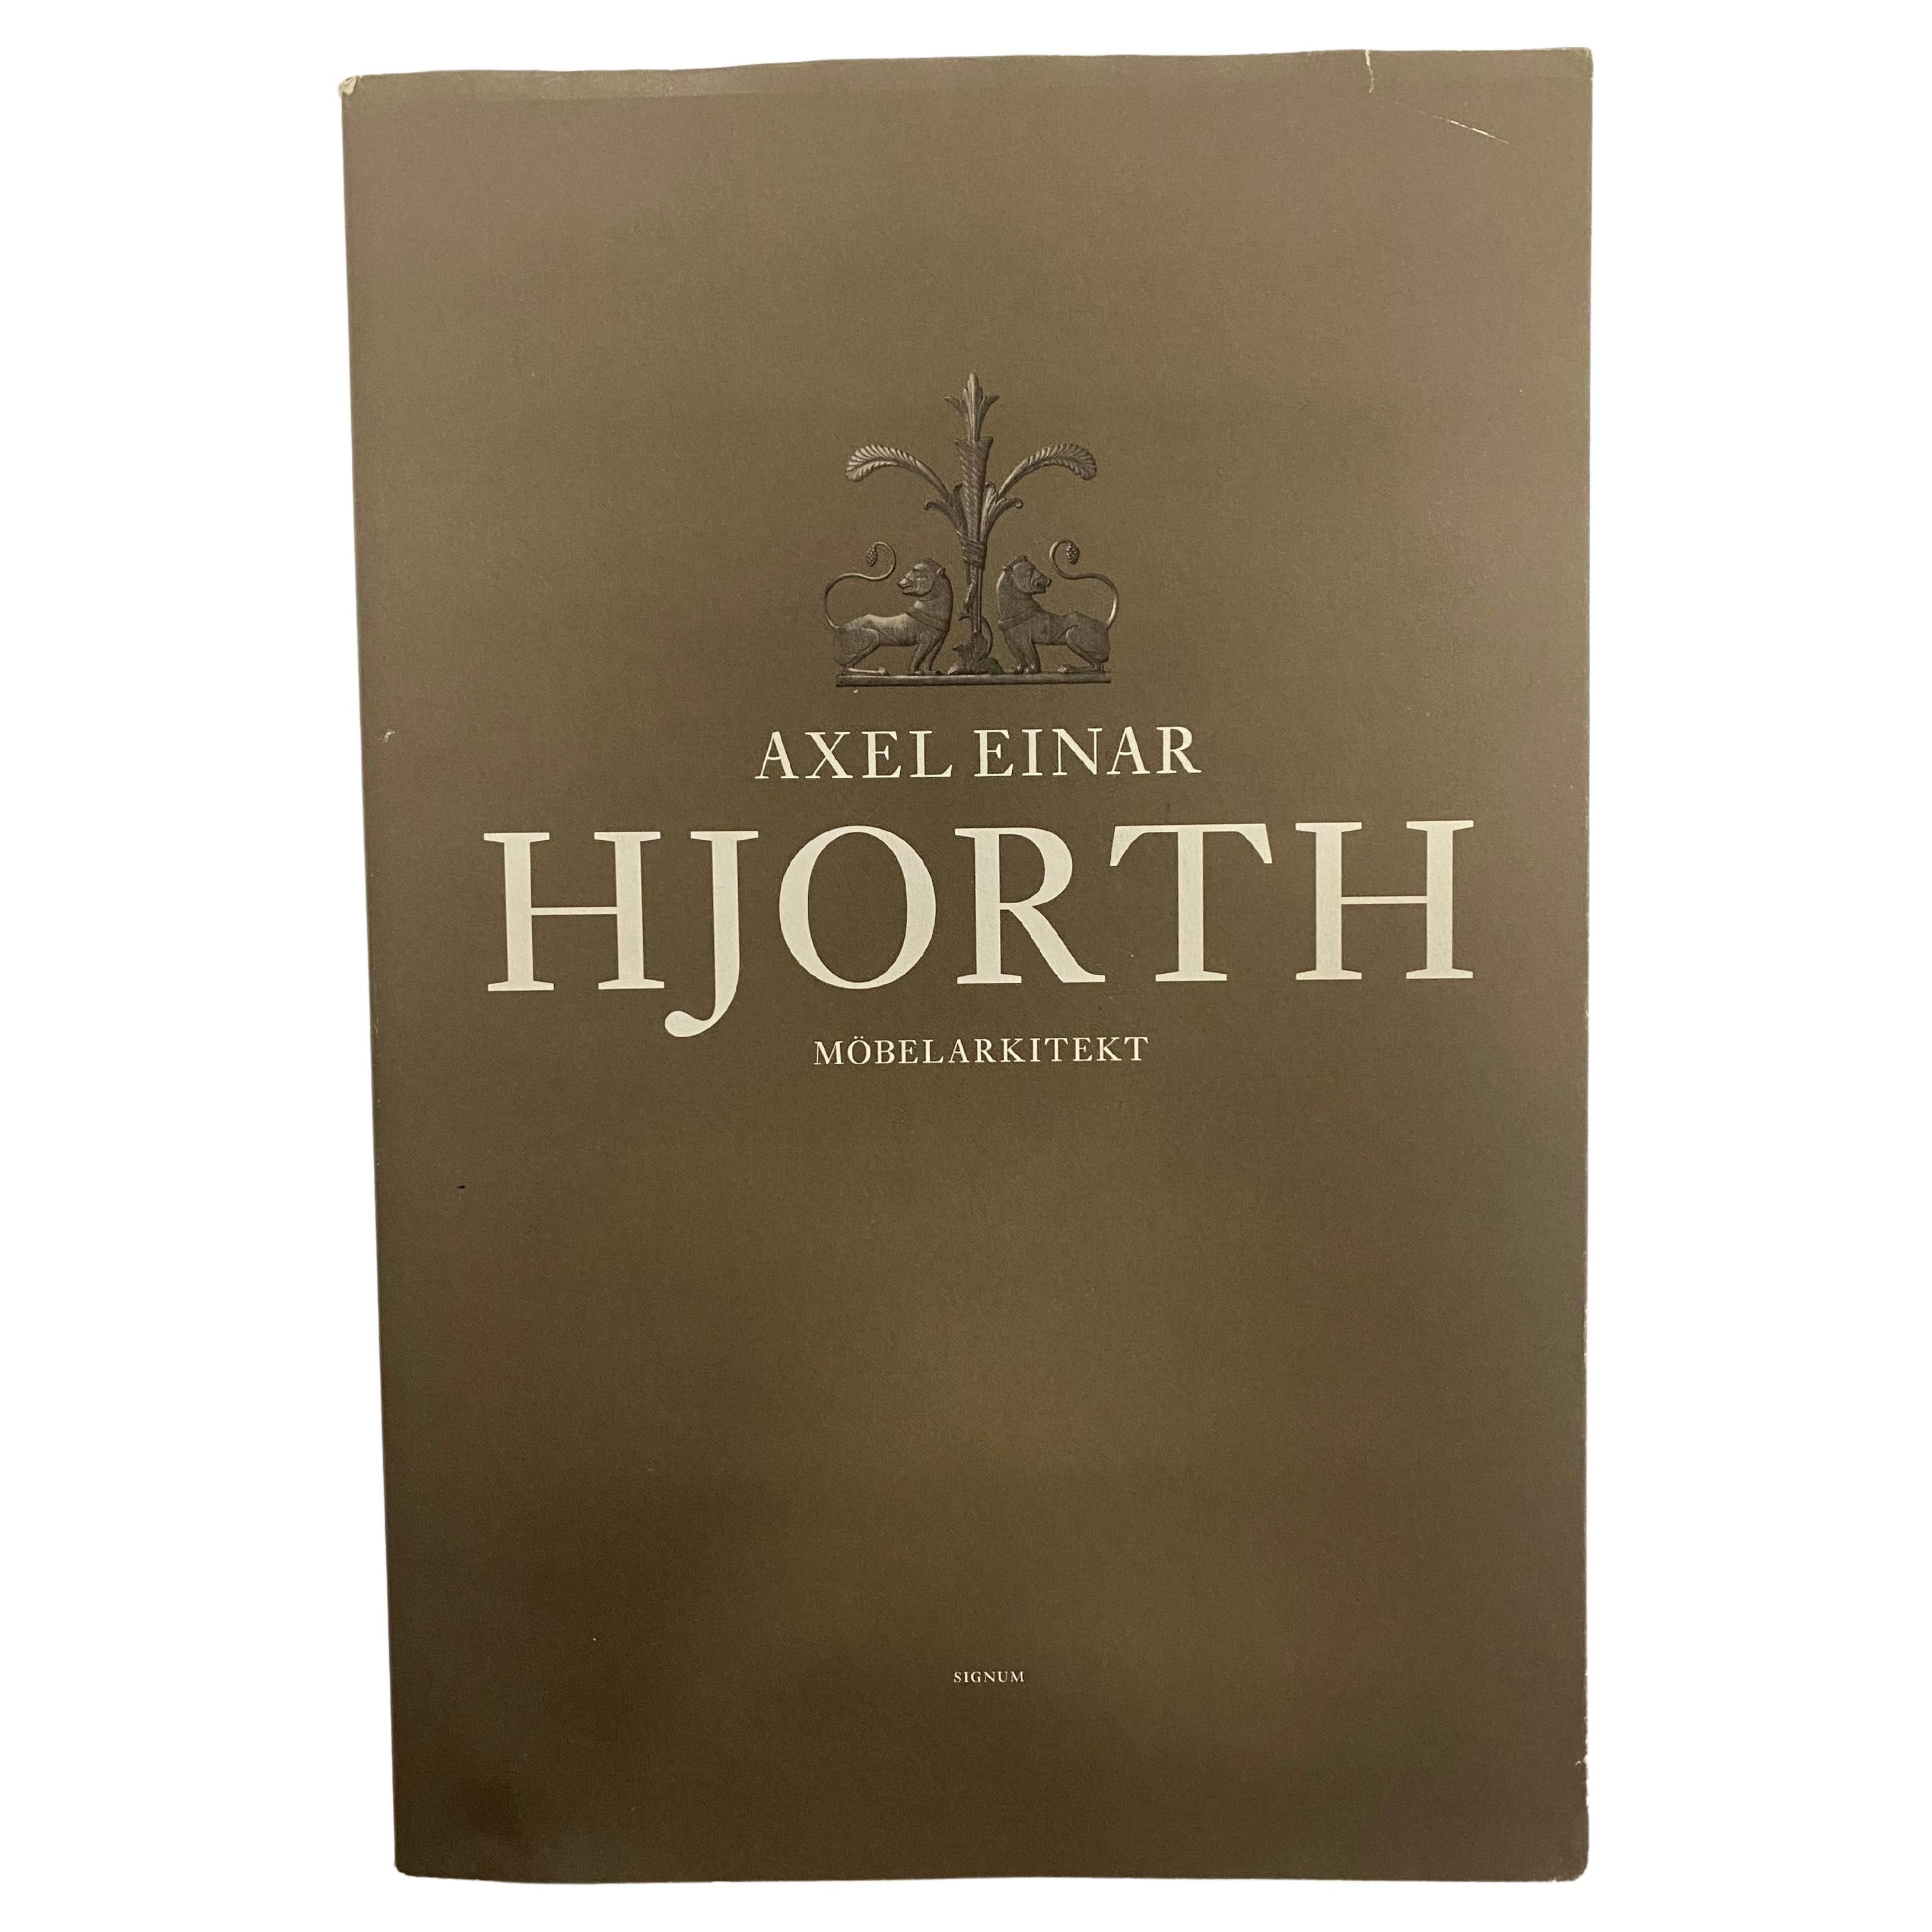 Axel Einar Hjorth: Mobelarkitekt (Book) For Sale